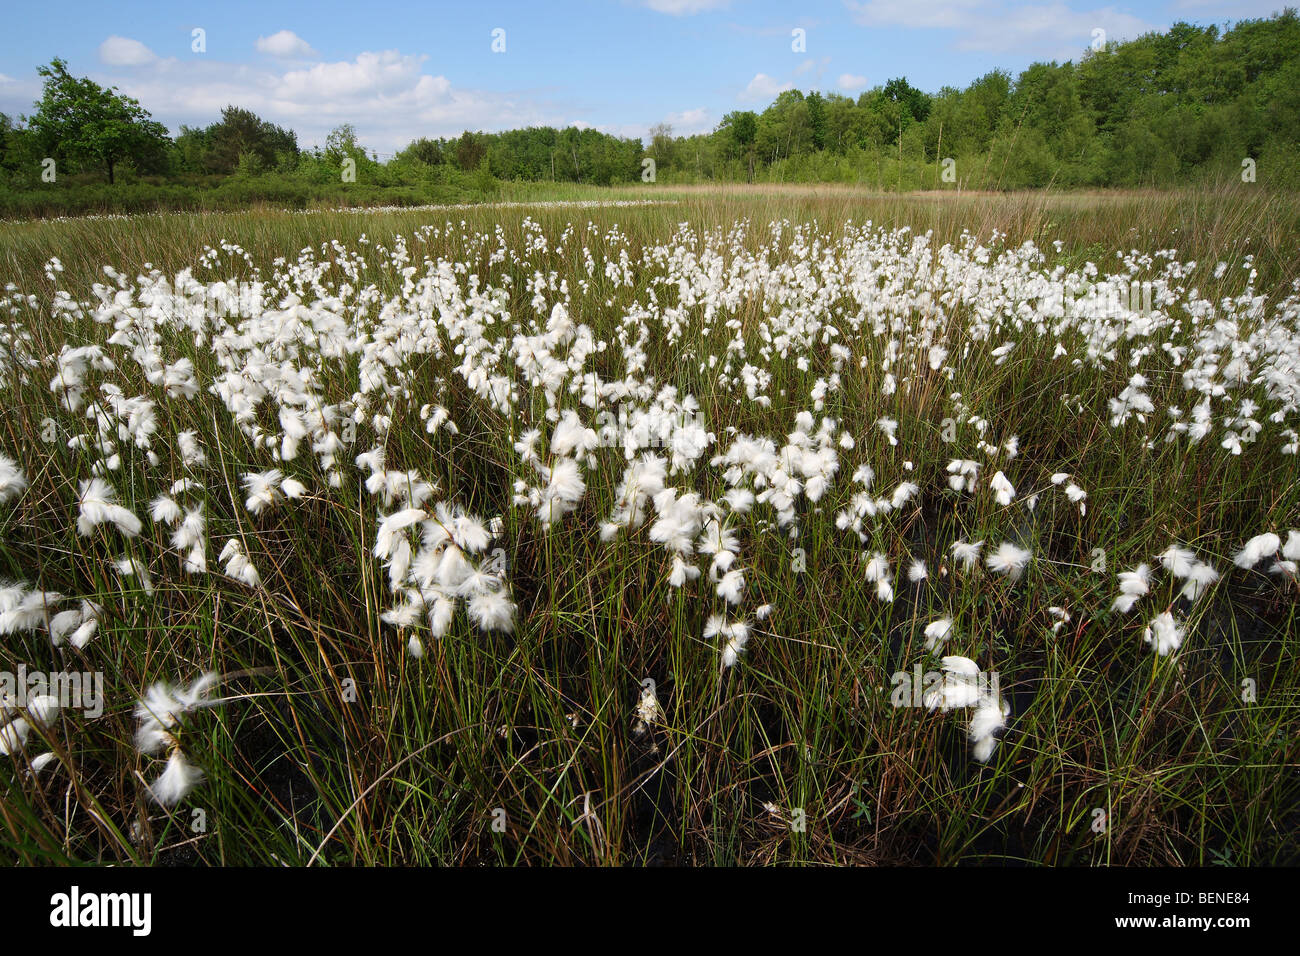 Grupo de Cottongrass común (Eriophorum angustifolium), Bélgica Foto de stock